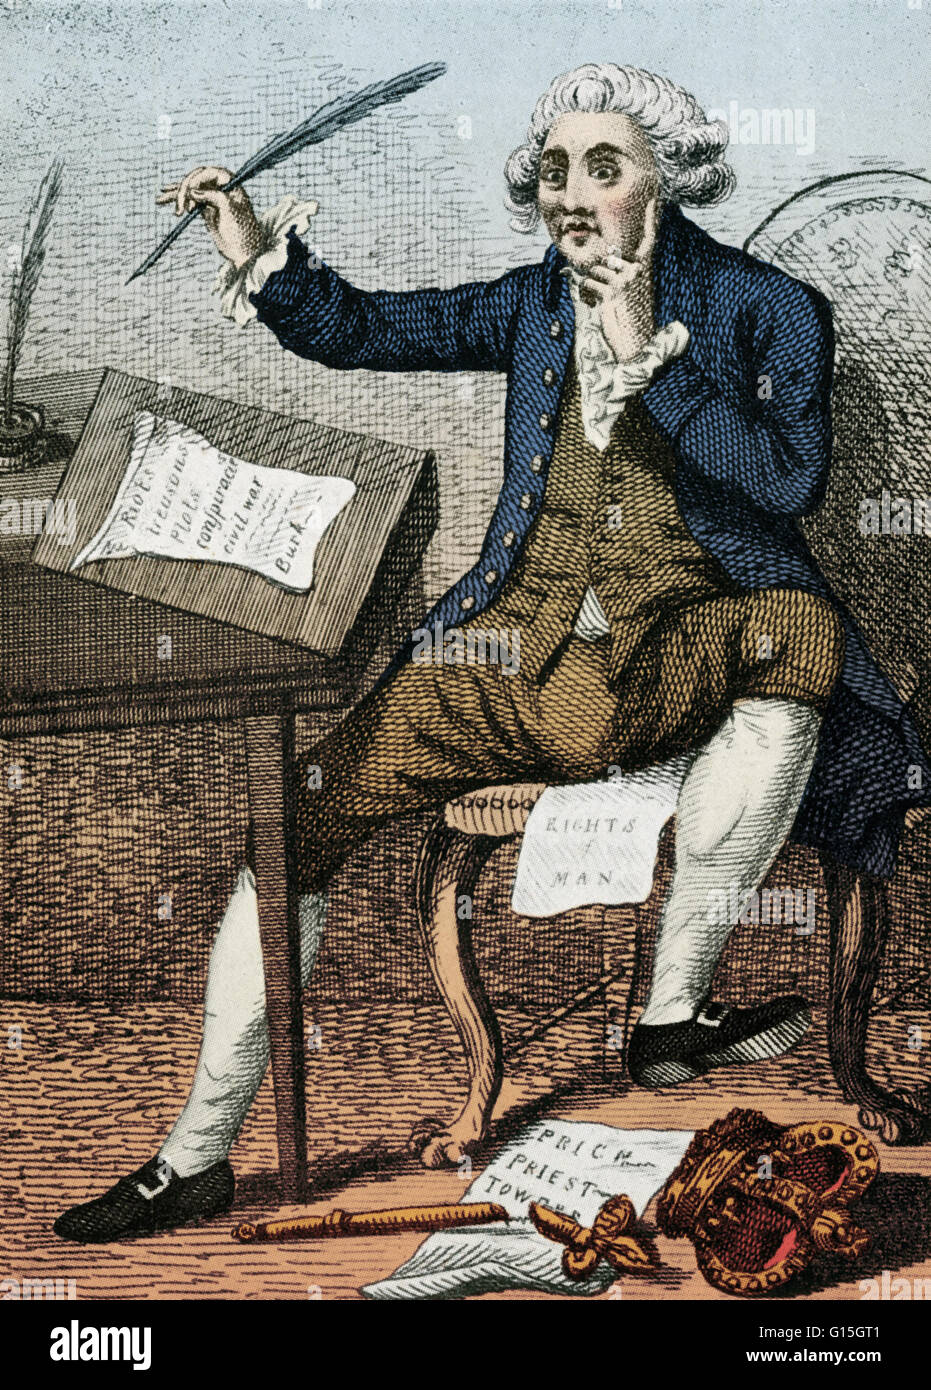 Thomas Paine (Febbraio 9, 1737 - 8 giugno 1809) era un americano attivista politico, filosofo, un teorico politico, rivoluzionario e uno dei padri fondatori degli Stati Uniti. Pamphlet il senso comune ispirato alle persone di dichiarare e lotta per inde Foto Stock